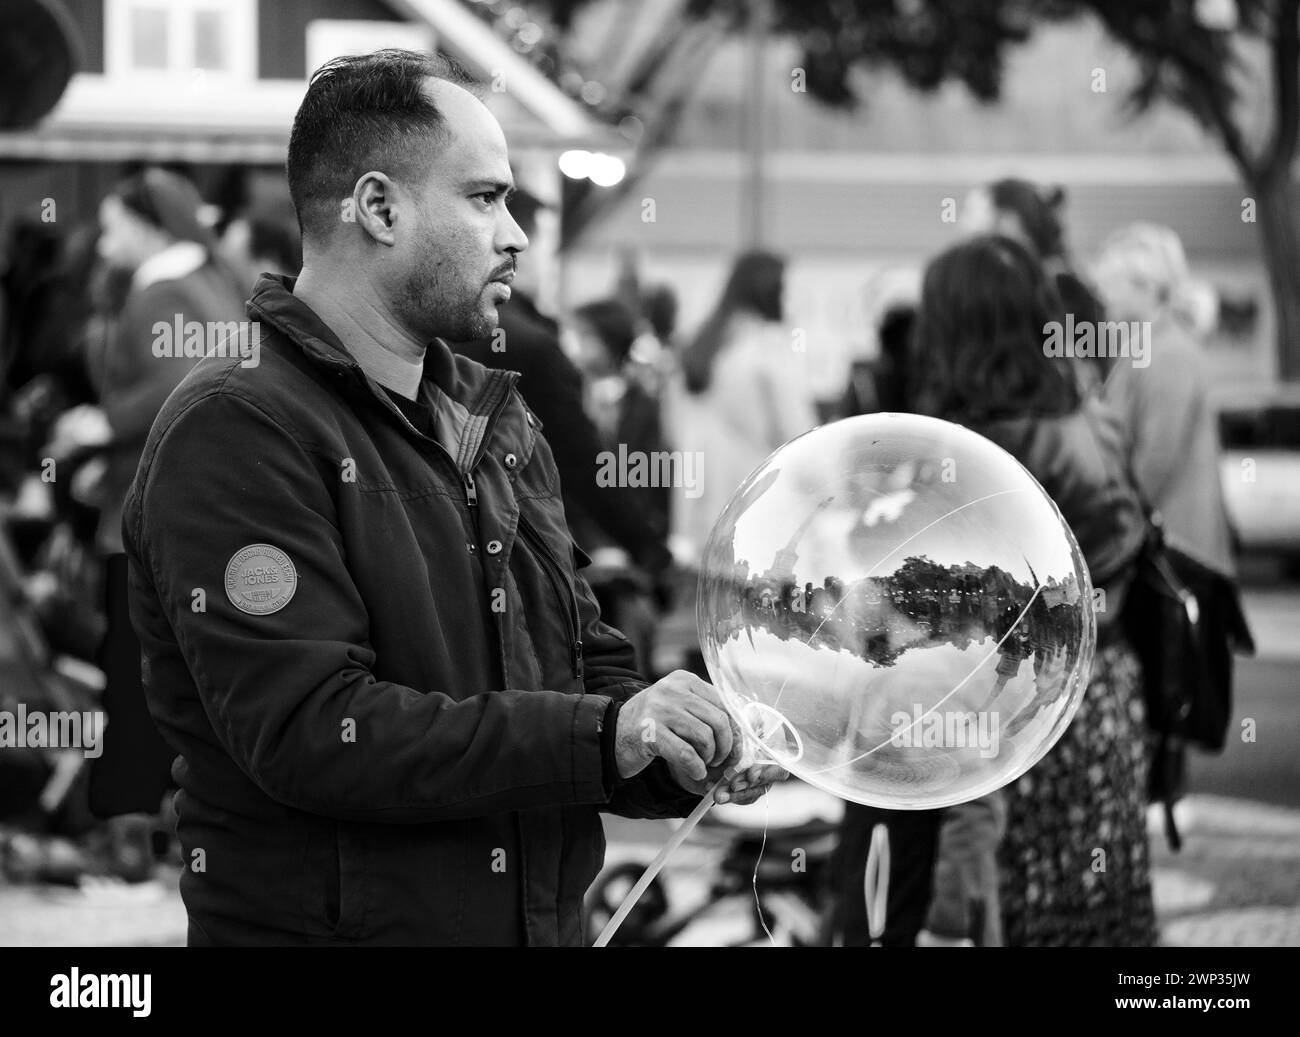 Uomo che soffia bolle al mercatino di natale annuale Foto Stock